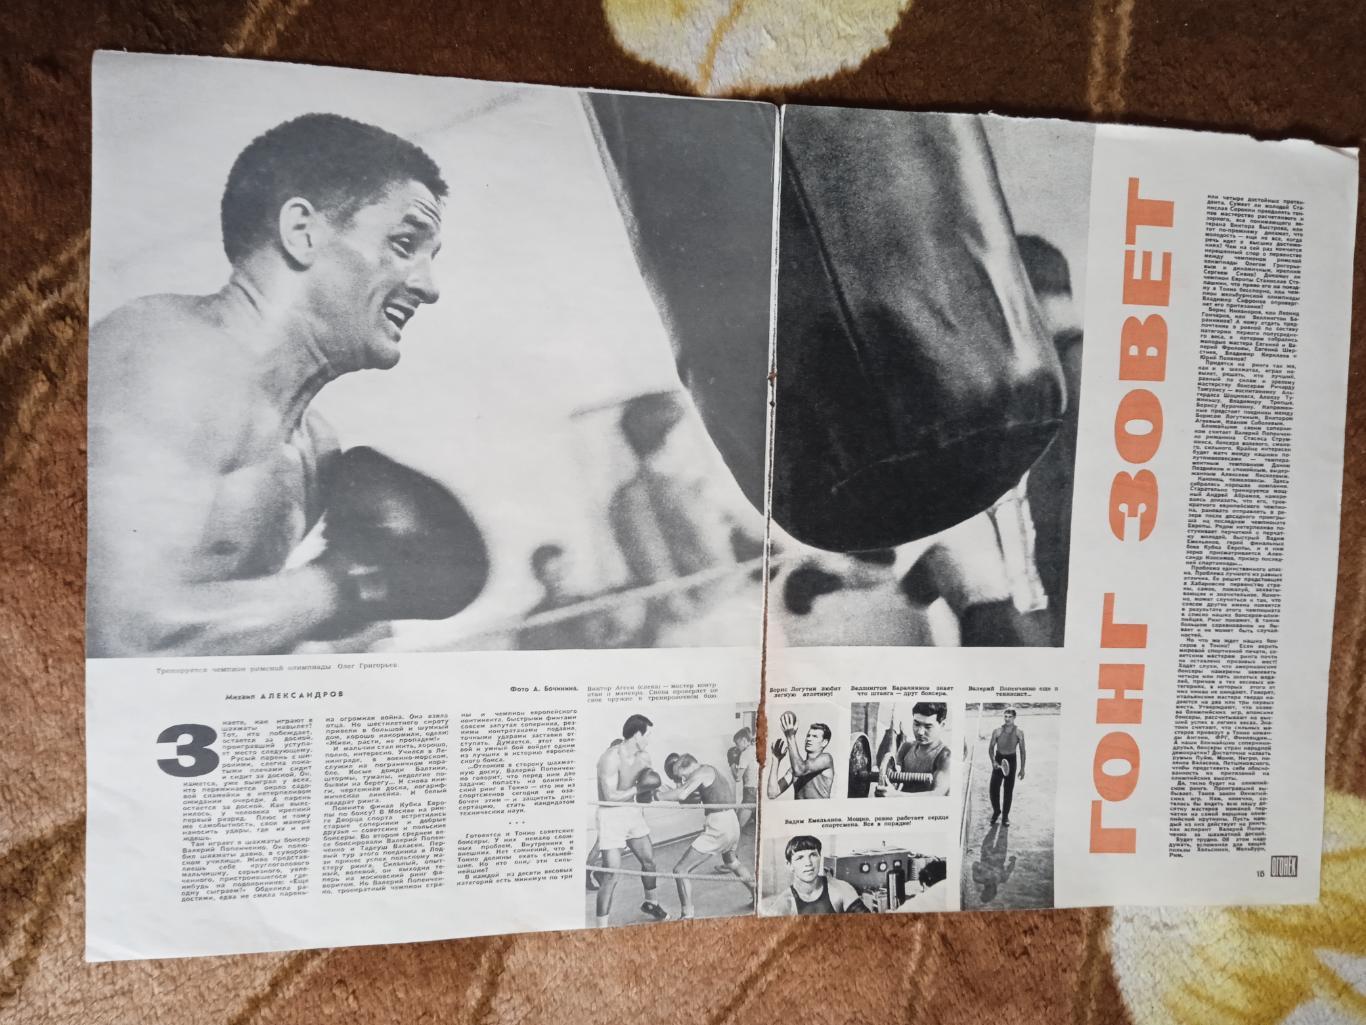 Статья.Фото.Бокс.Сборная СССР перед Олимпиадой 1964.Токио.Журнал Огонек 1964 г.